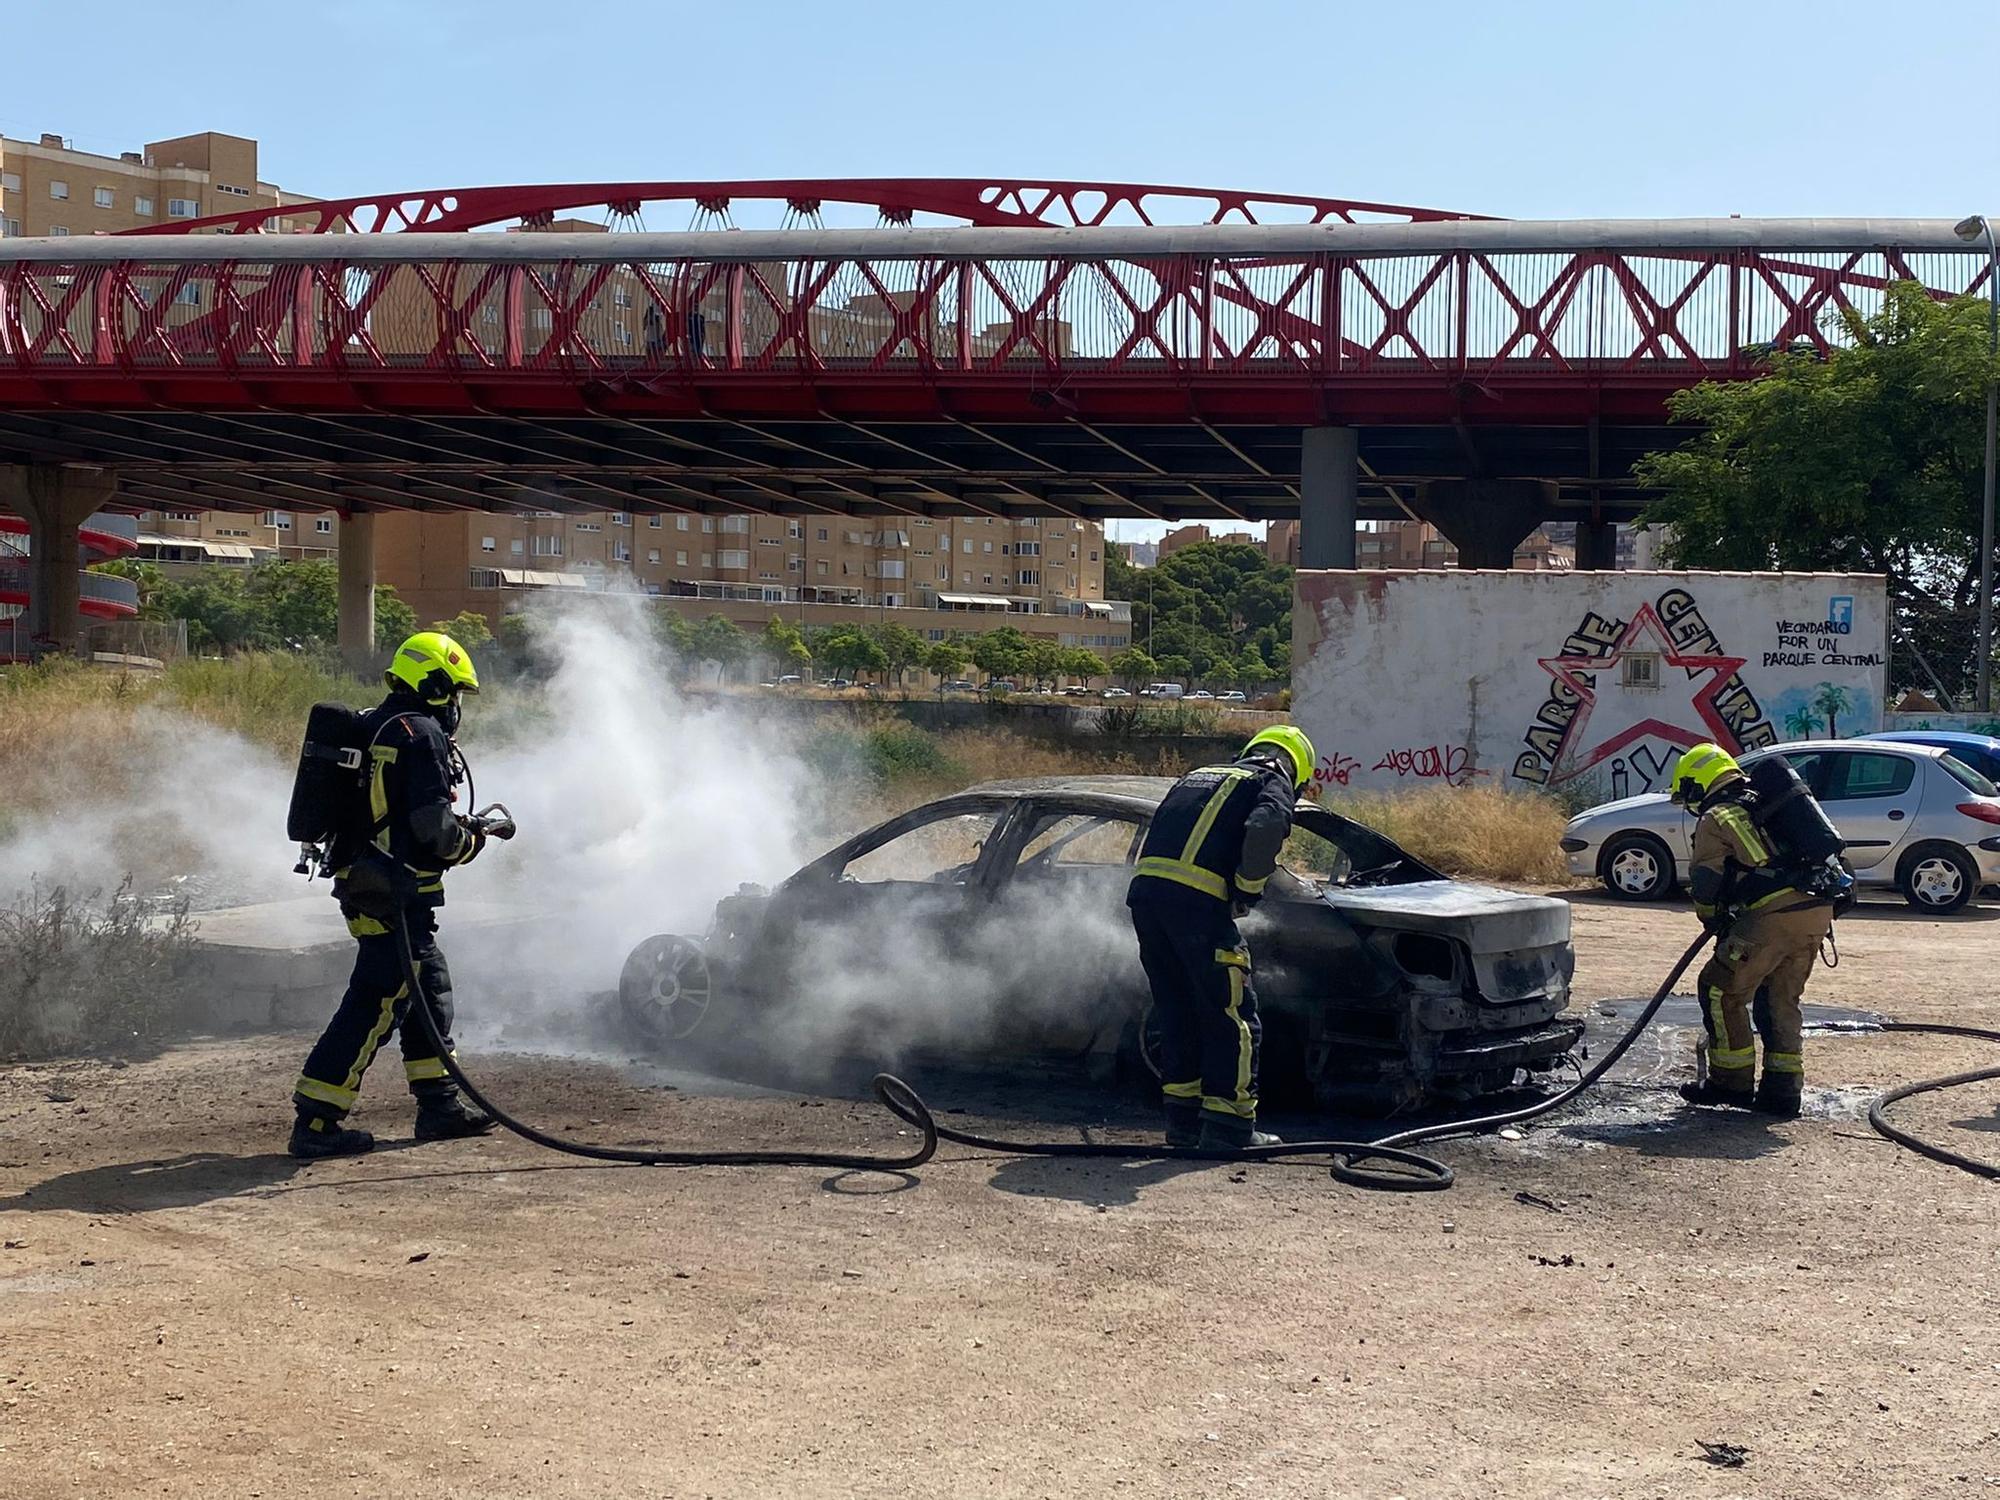 El fuego calcina un coche estacionado y daña a otro junto al puente rojo en Alicante